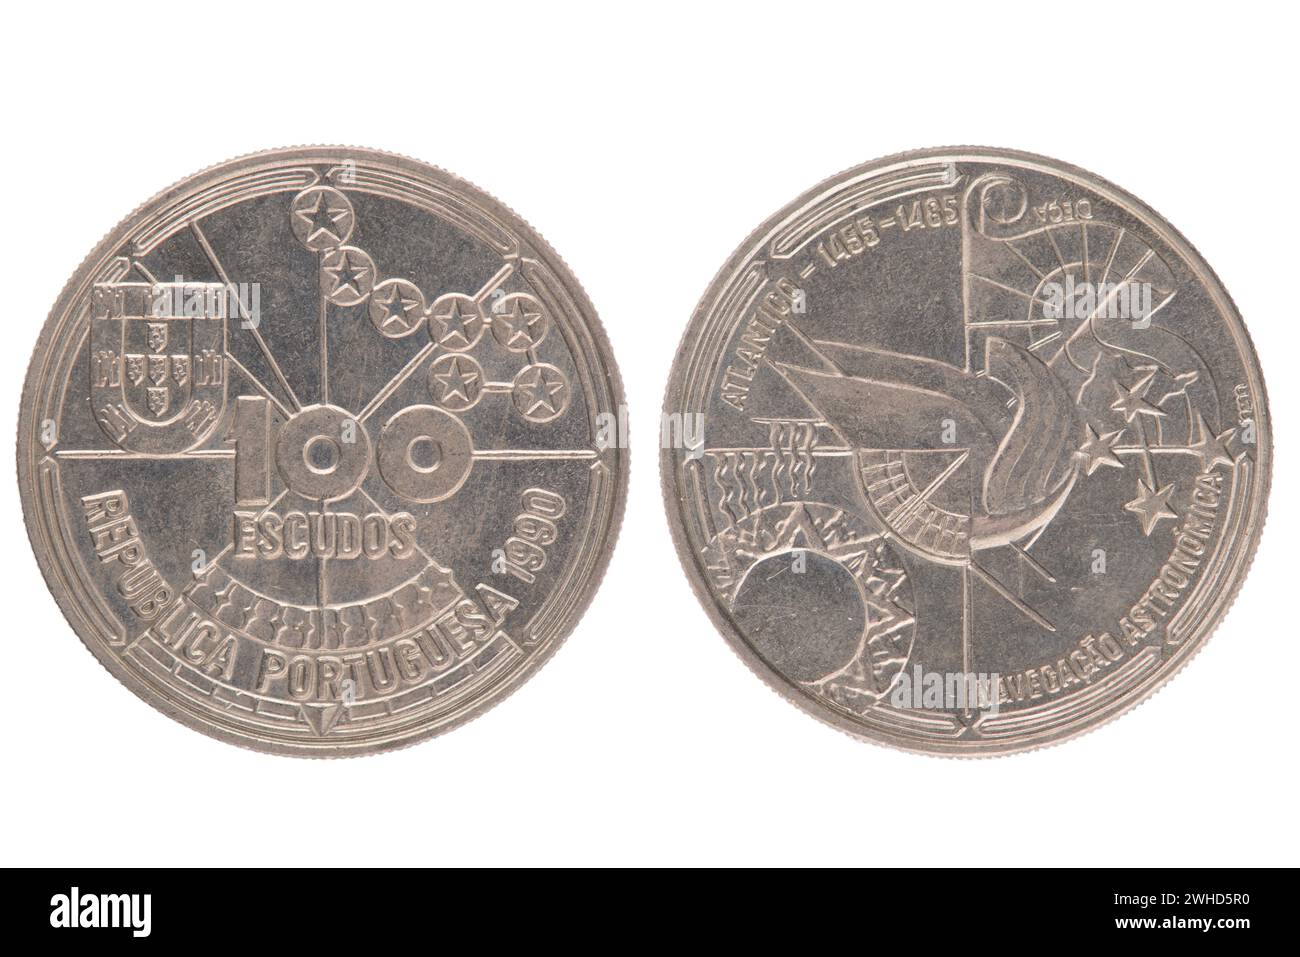 Portuguese 100 Escudos Coin Stock Photo